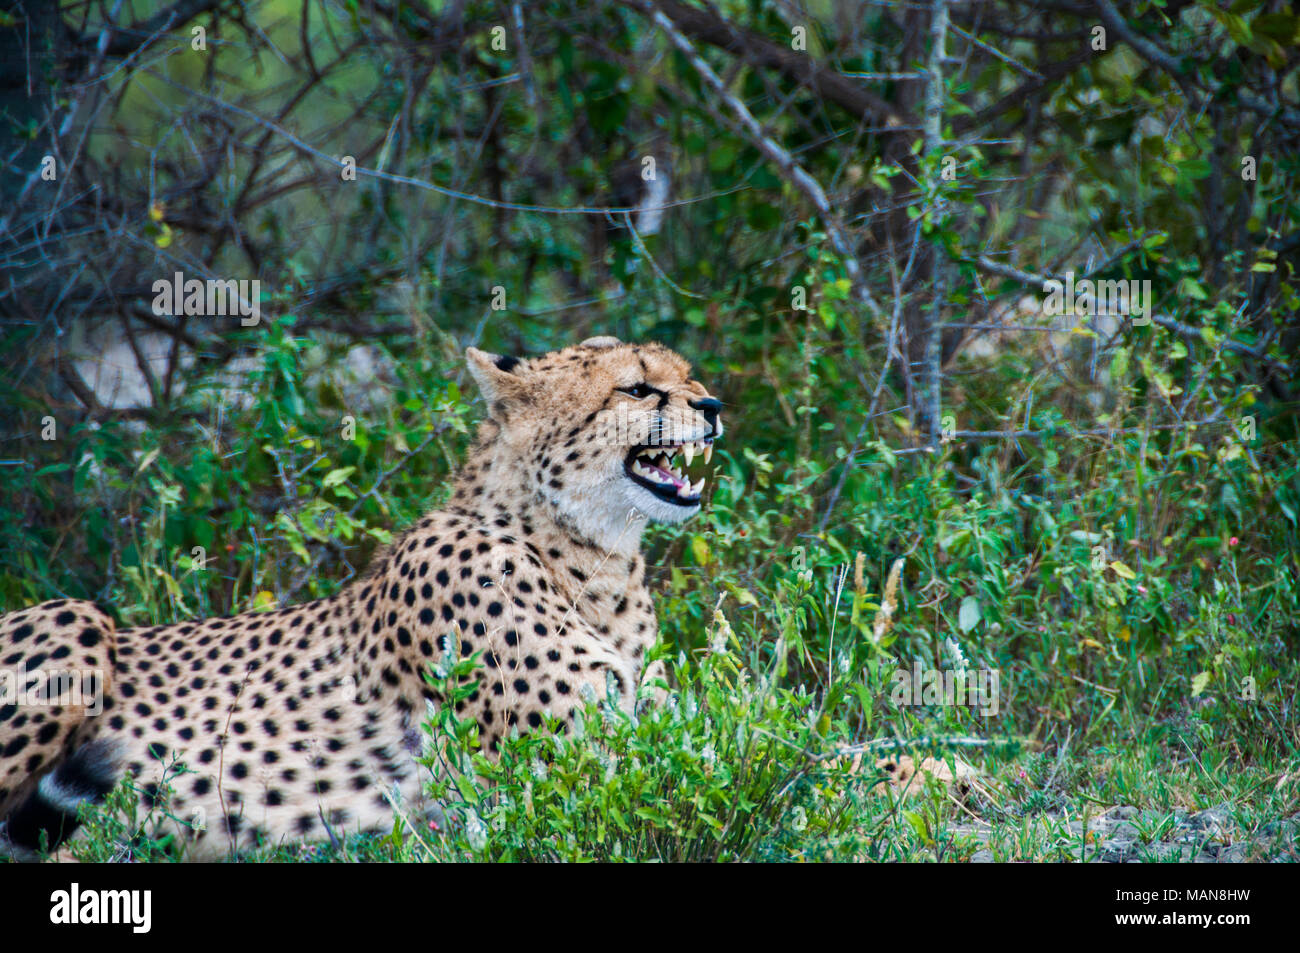 Seltene Foto von einem geparden mit seinen Mund weit offen, seine Zähne zu zeigen. Tansania, Afrika Stockfoto